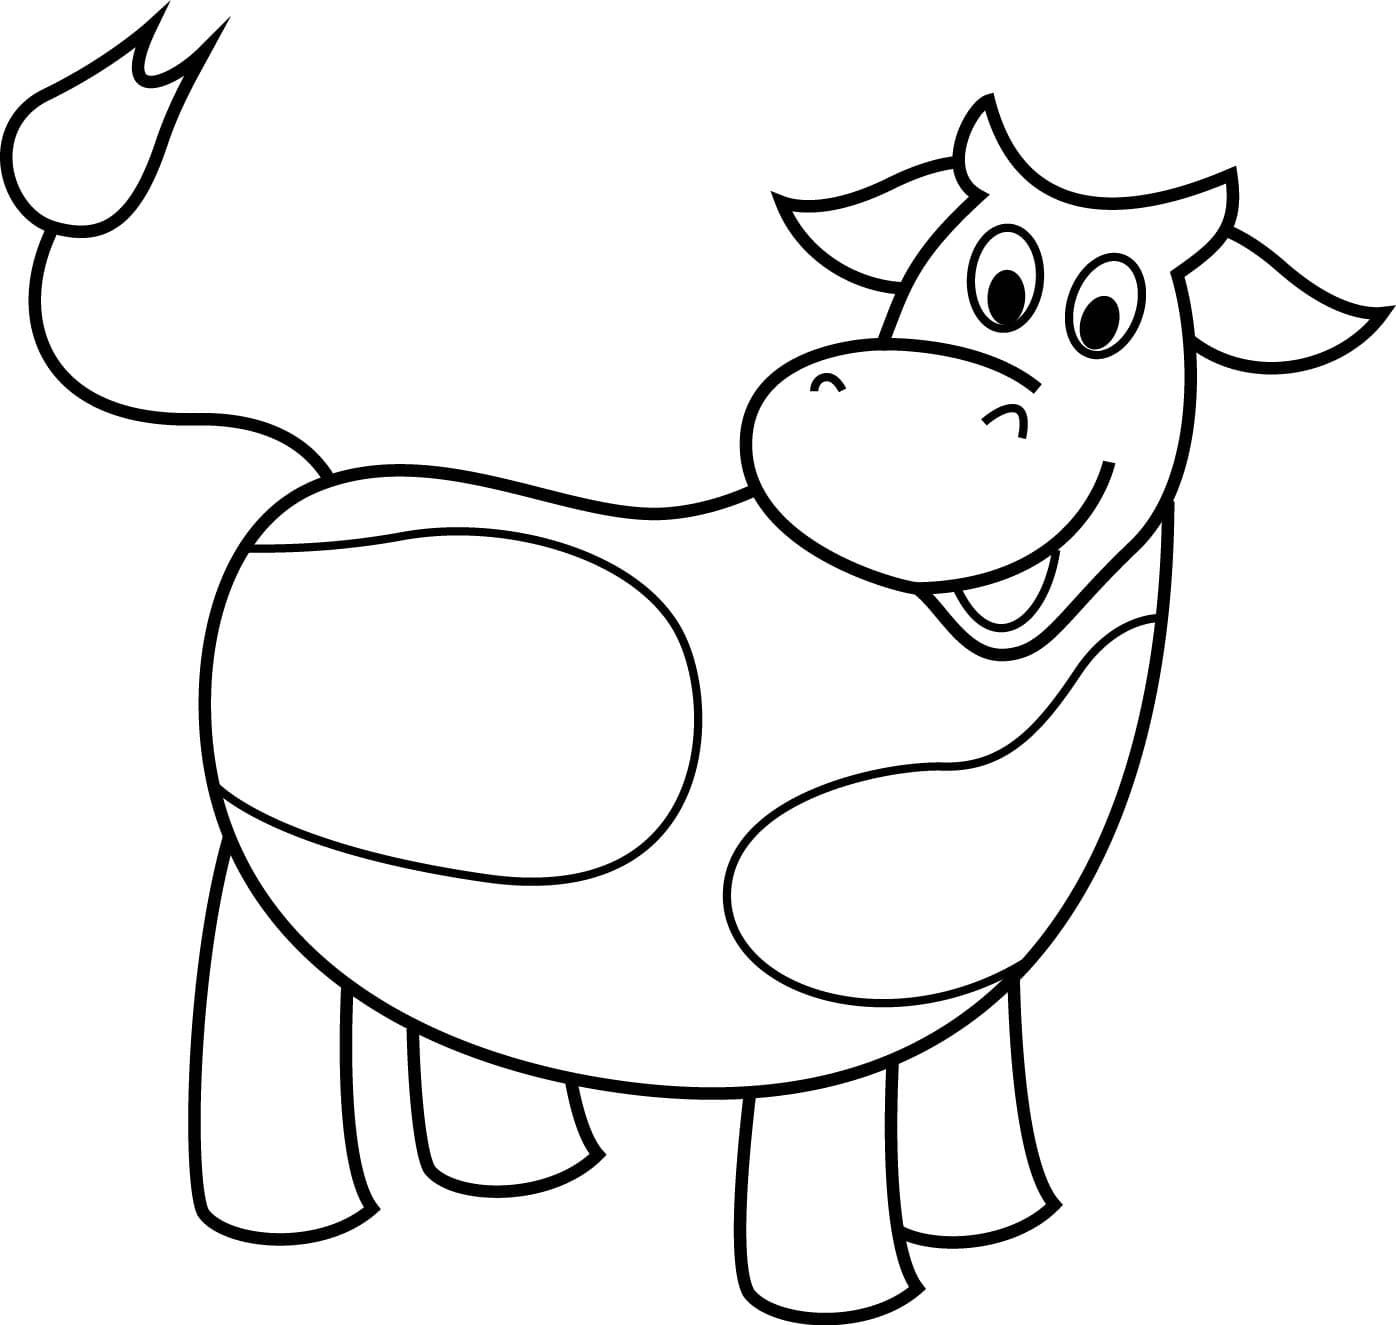 Детская раскраска корова_6326